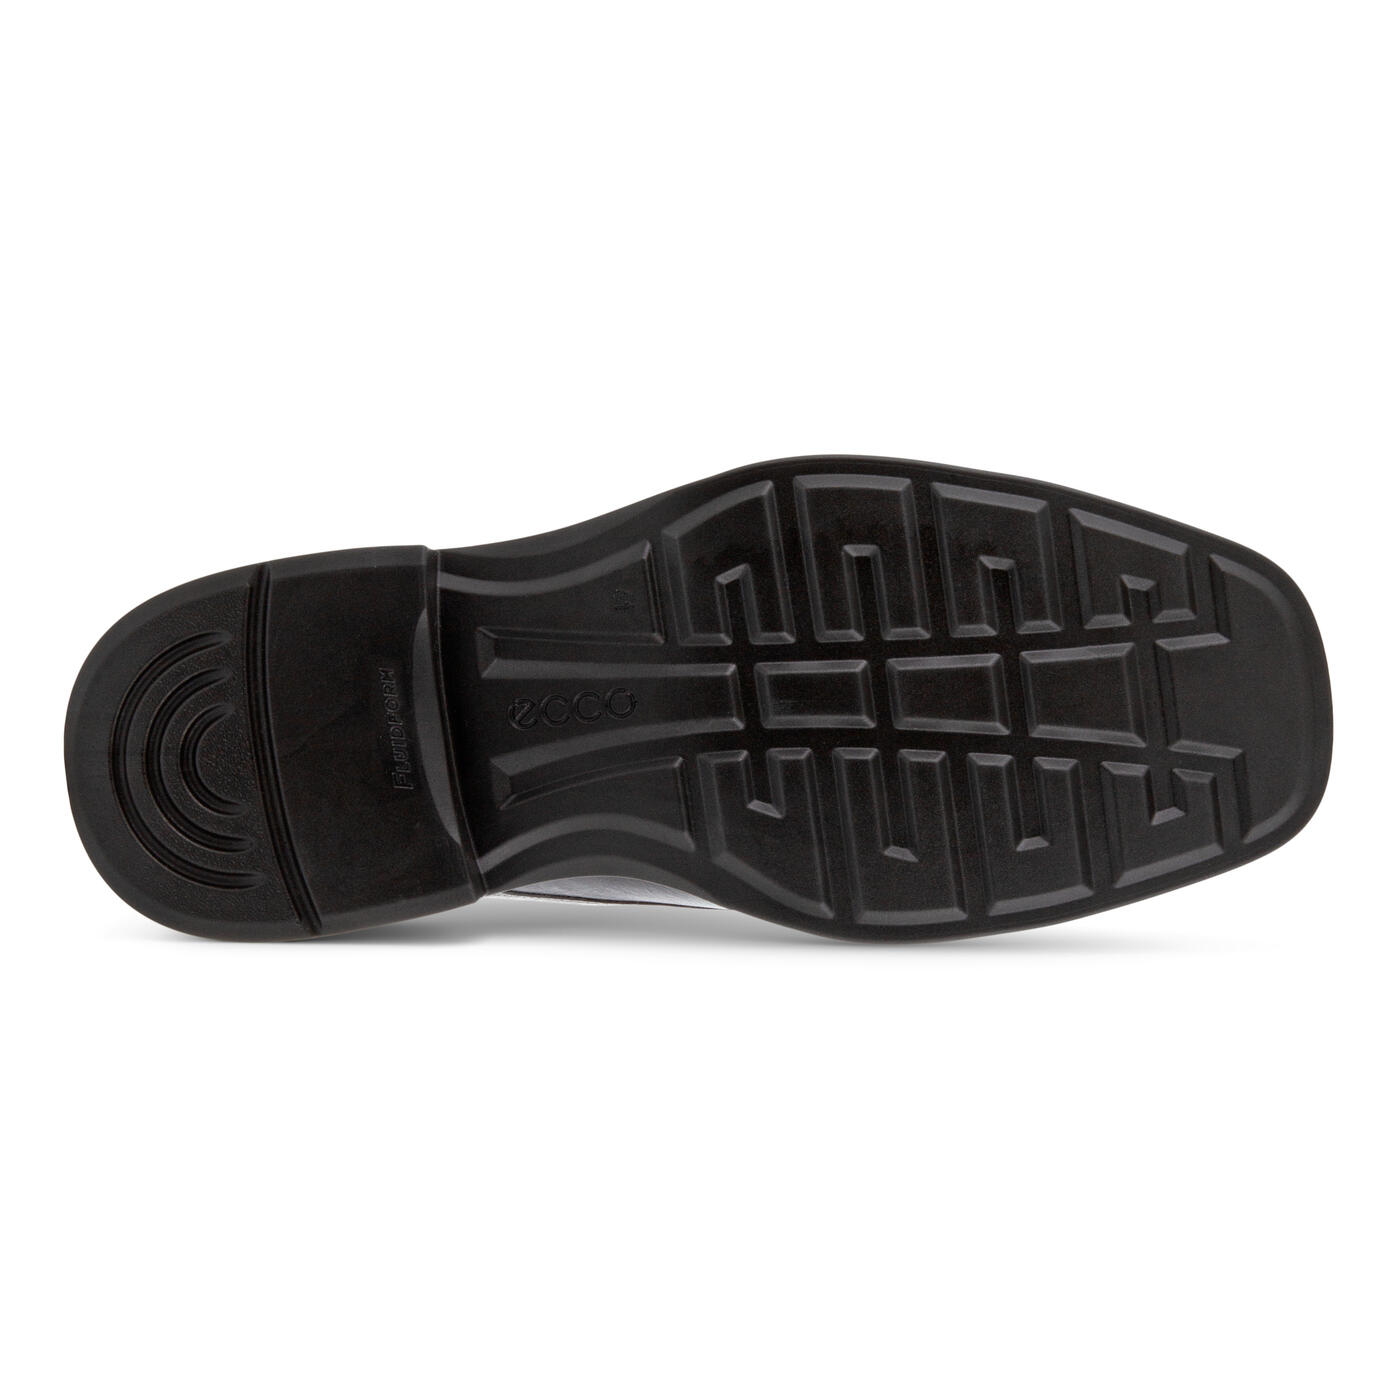 ECCO HELSINKI 2 MEN'S PLAIN DERBY | Official ECCO® Shoes